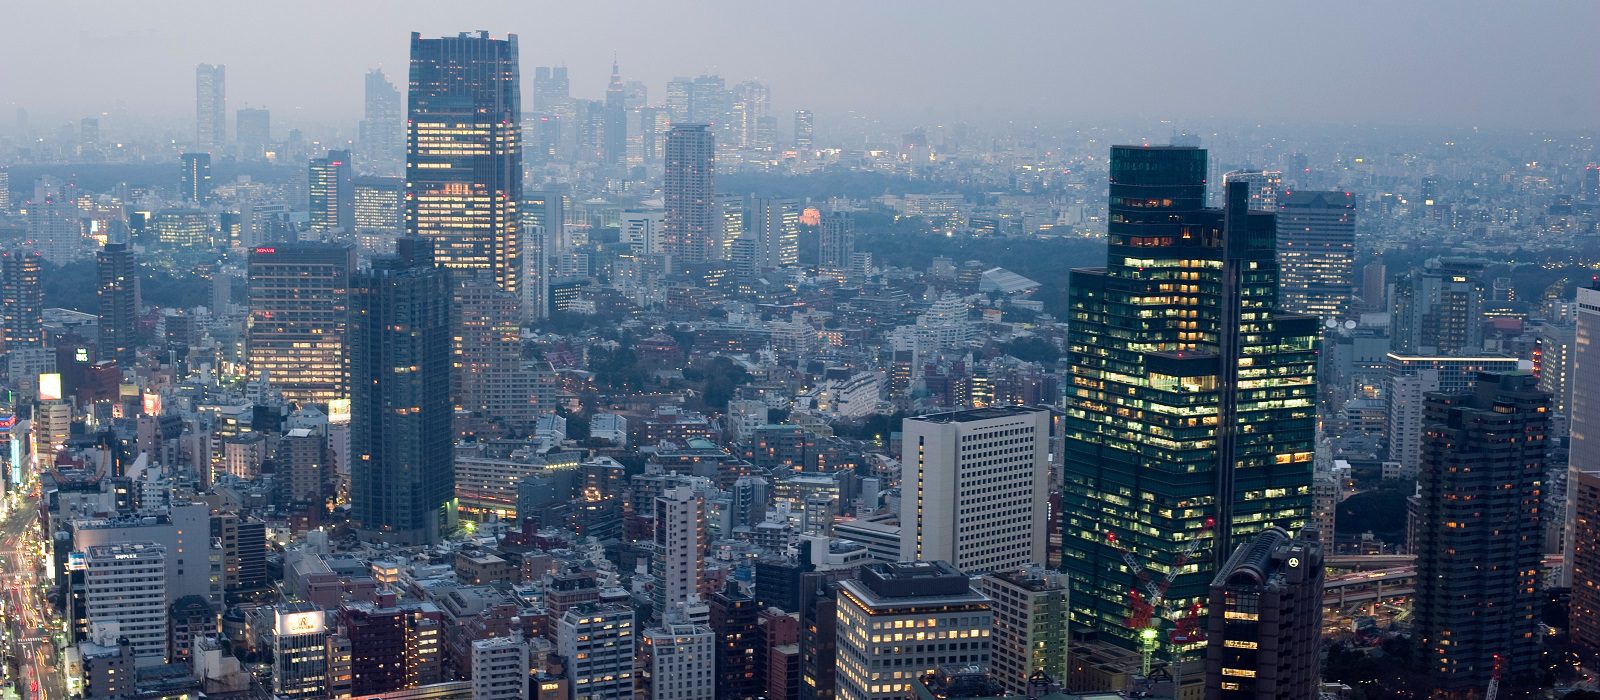 灰色に見える都市風景、ライトが点灯している東京のオフィスビル